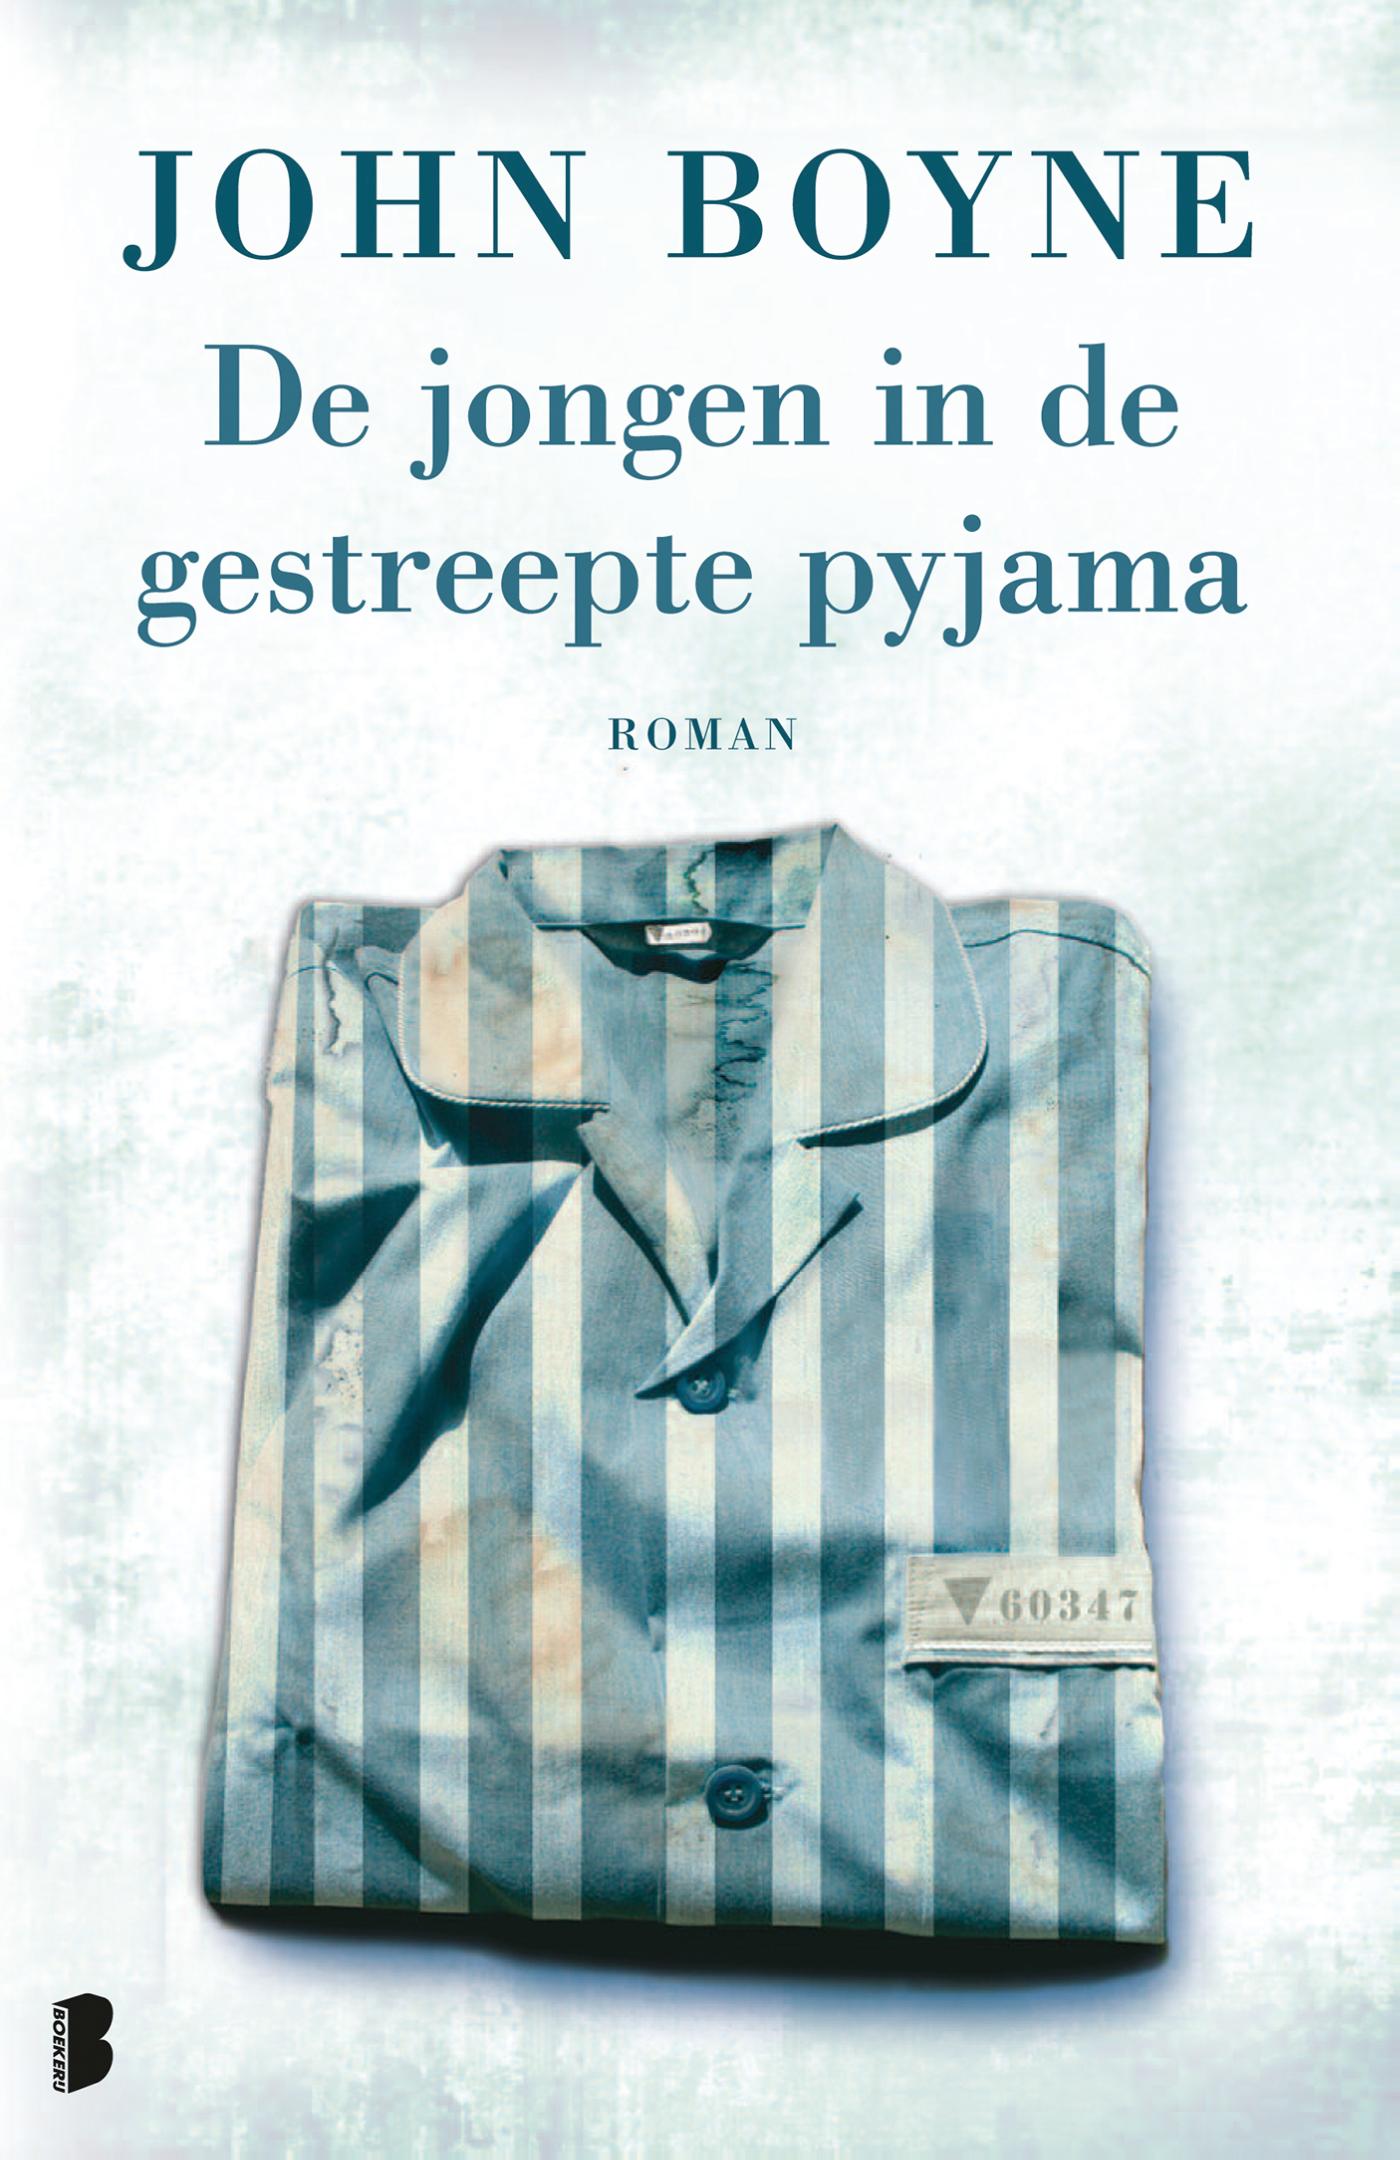 De jongen in de gestreepte pyjama (Ebook)